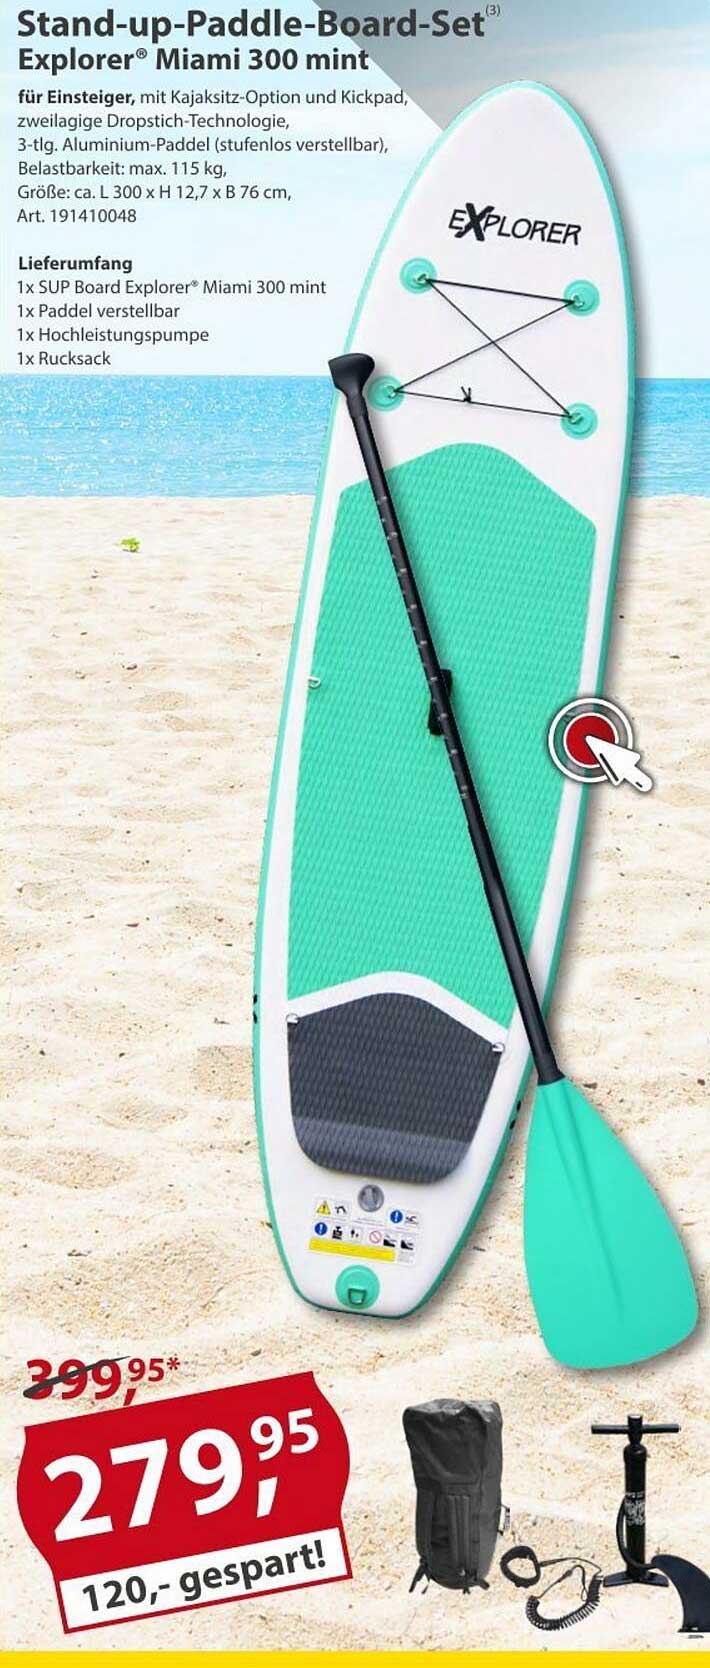 bei Baumarkt 300 Sonderpreis Stand-up-paddle-board-set Miami Angebot Explorer